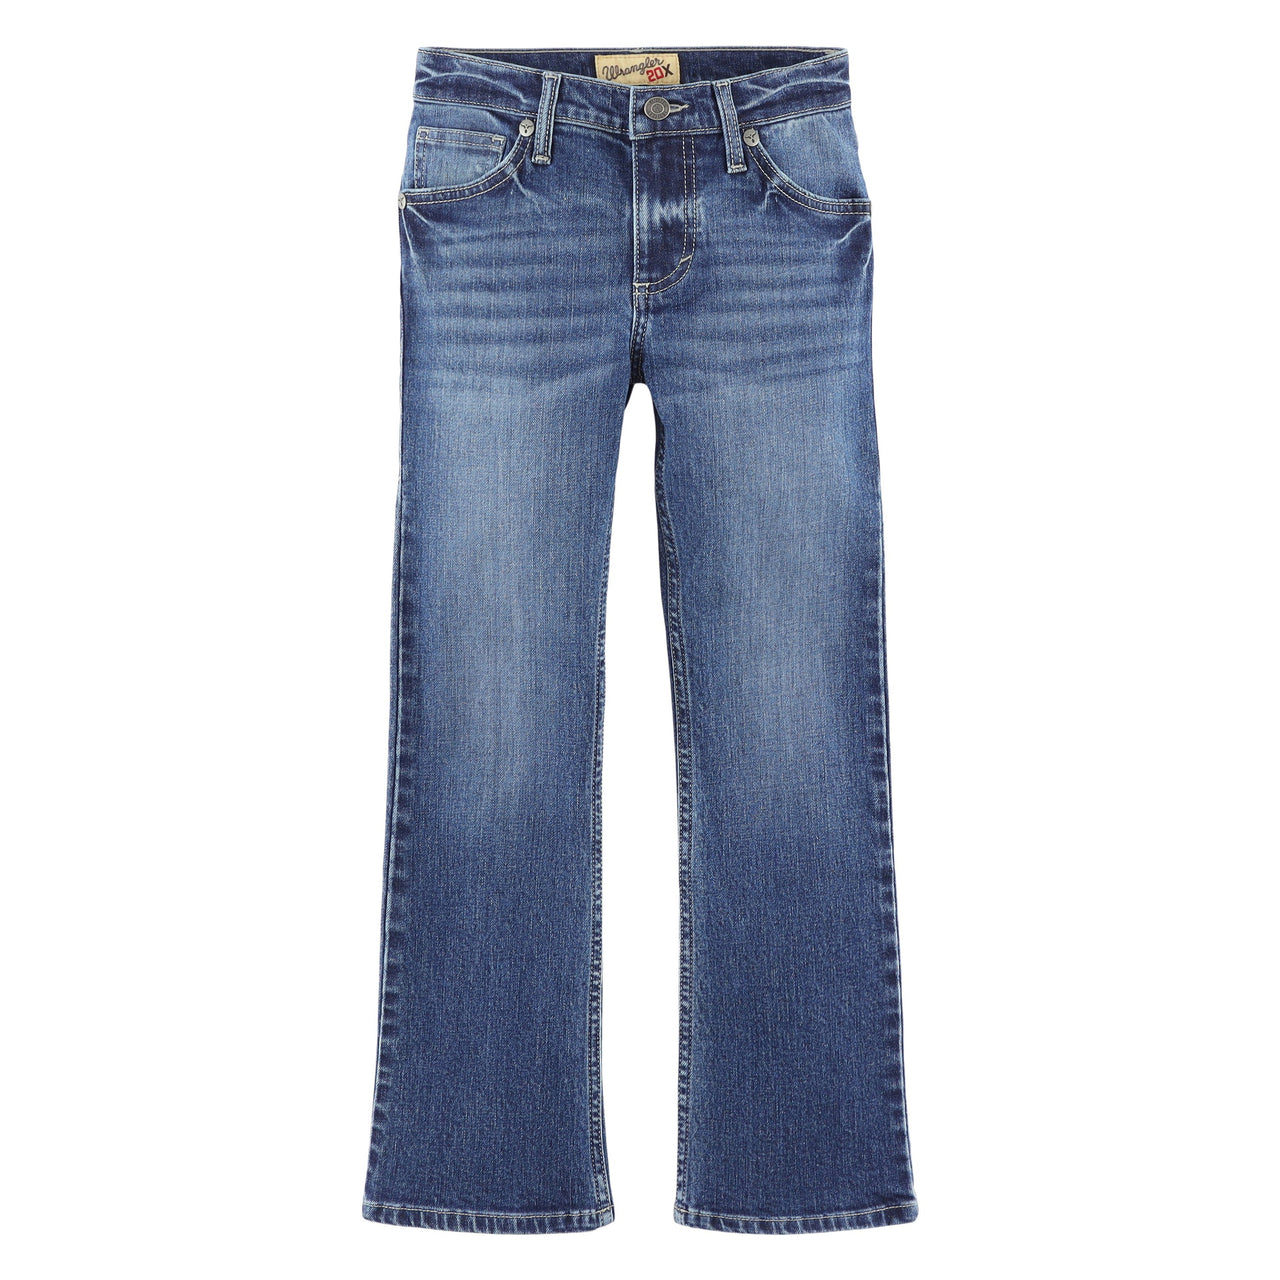 Wrangler Boy's Retro Slim Bootcut Jeans - Sorrel